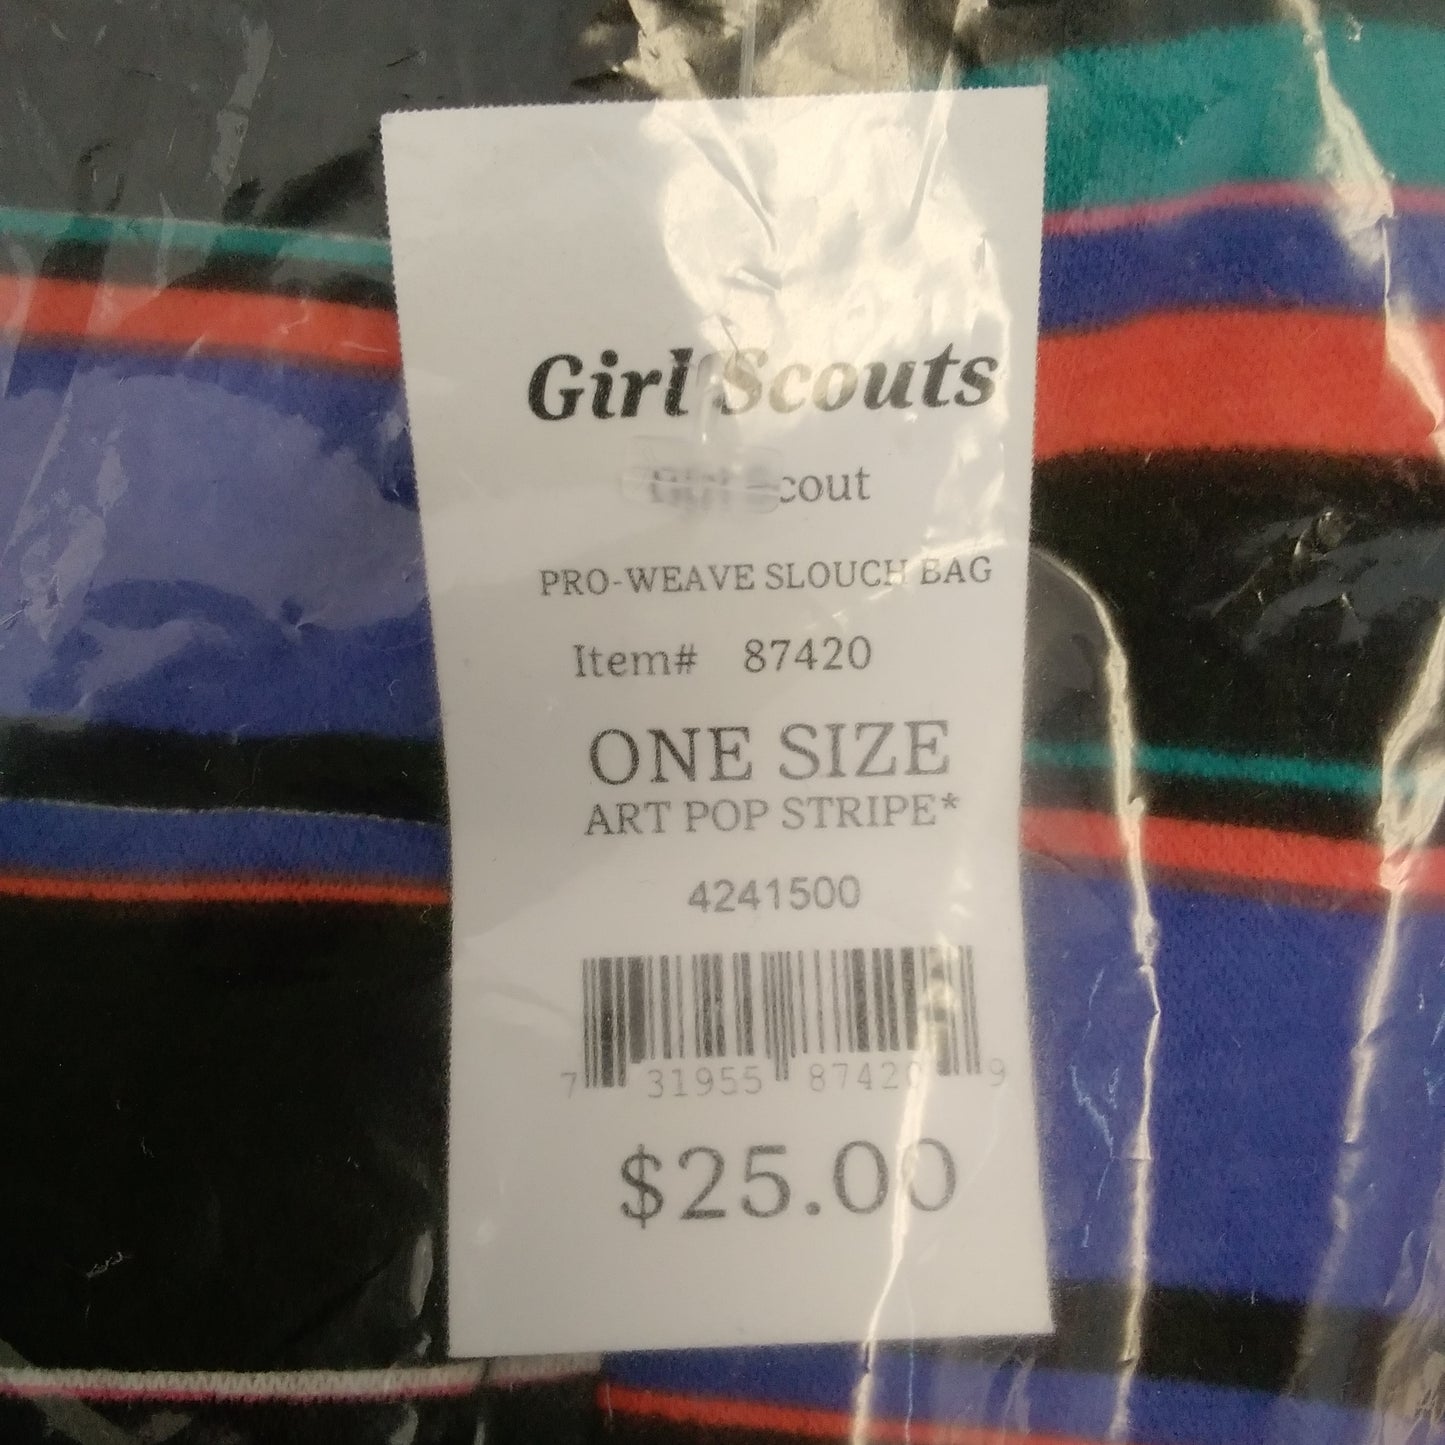 NWT - Girl Scouts 'Art Pop Stripe' Pro-Weave Slouch Bag